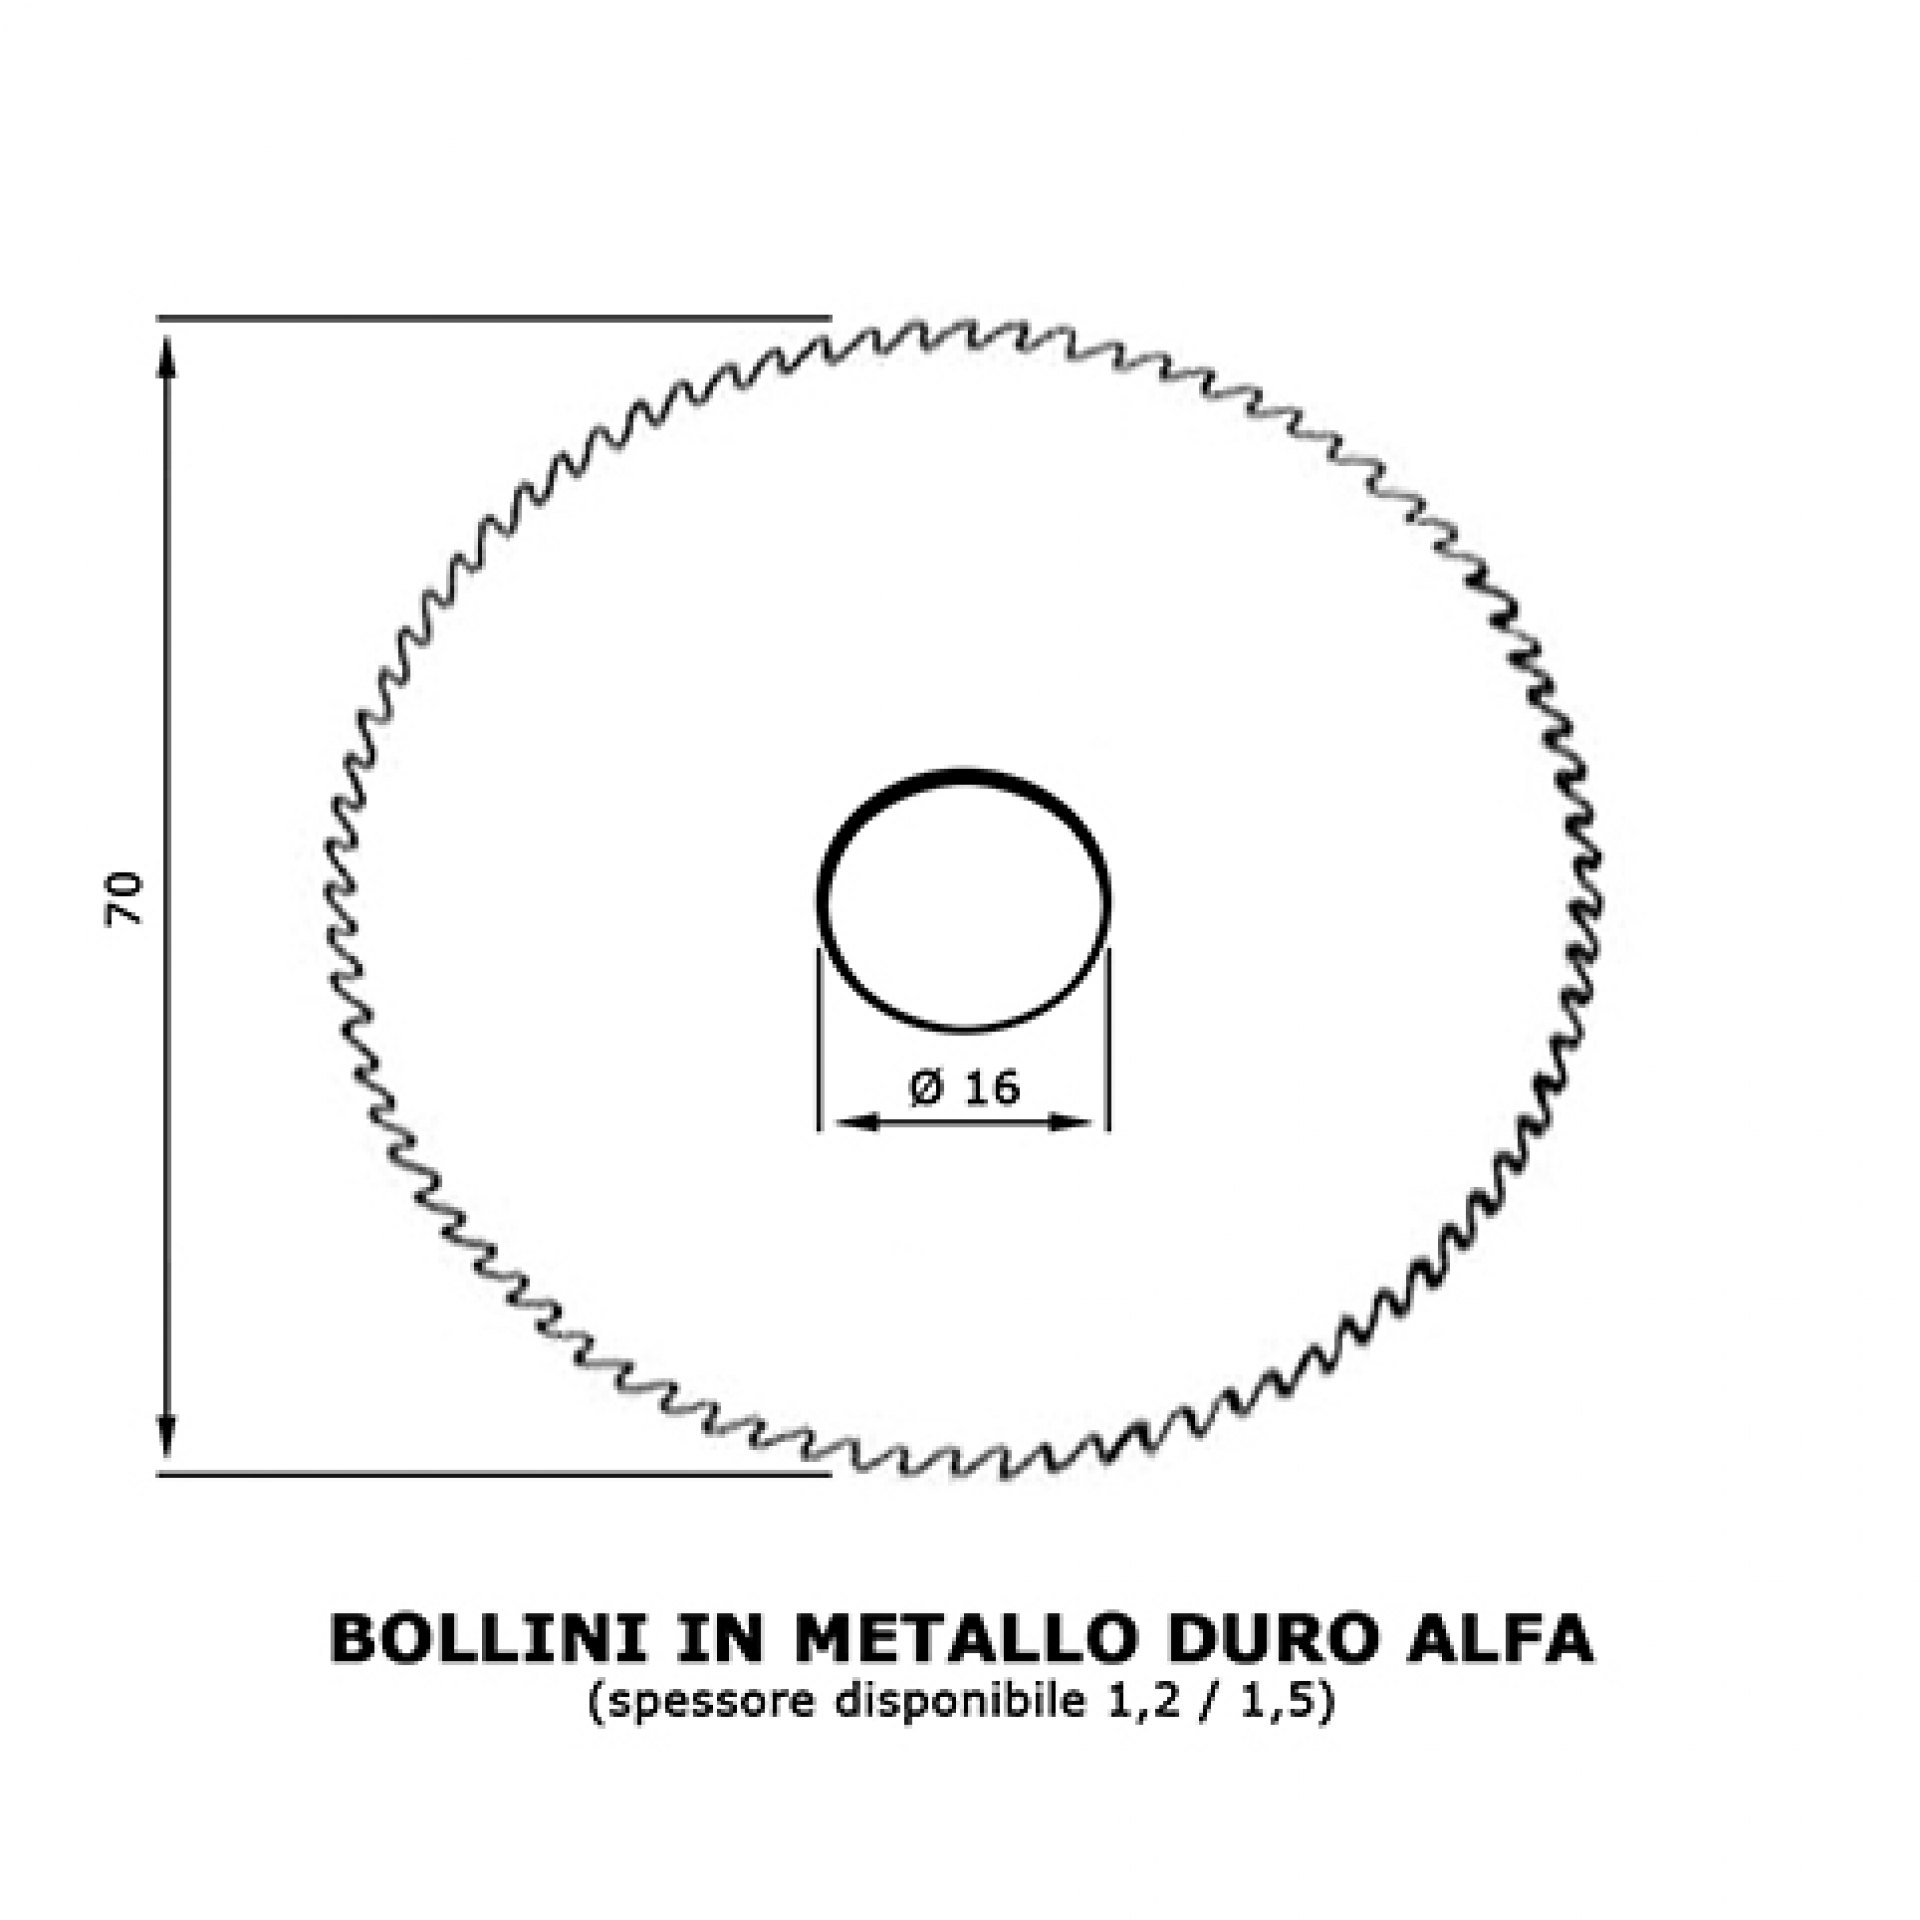 Bollini in Metallo Duro ALFA. 